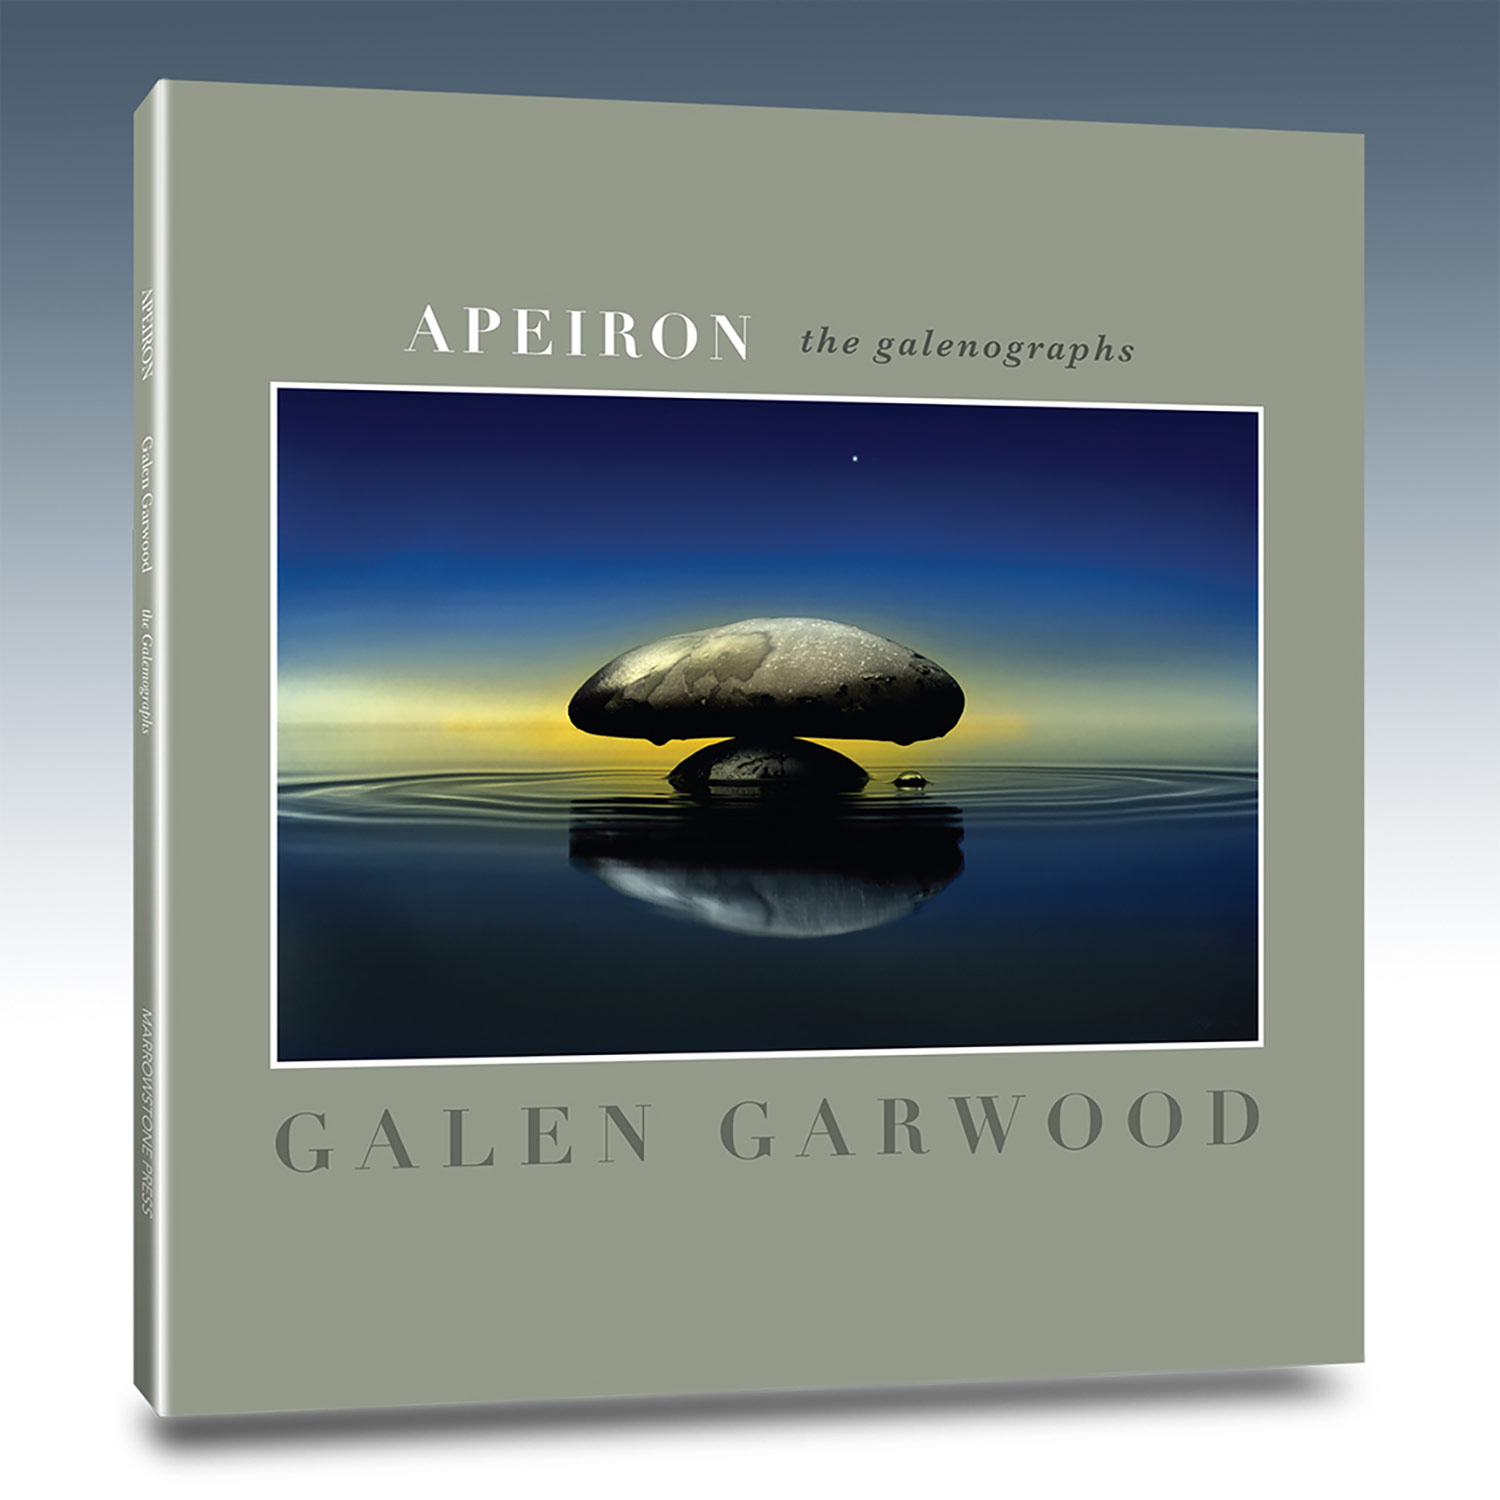 Apeiron by Galen Garwood